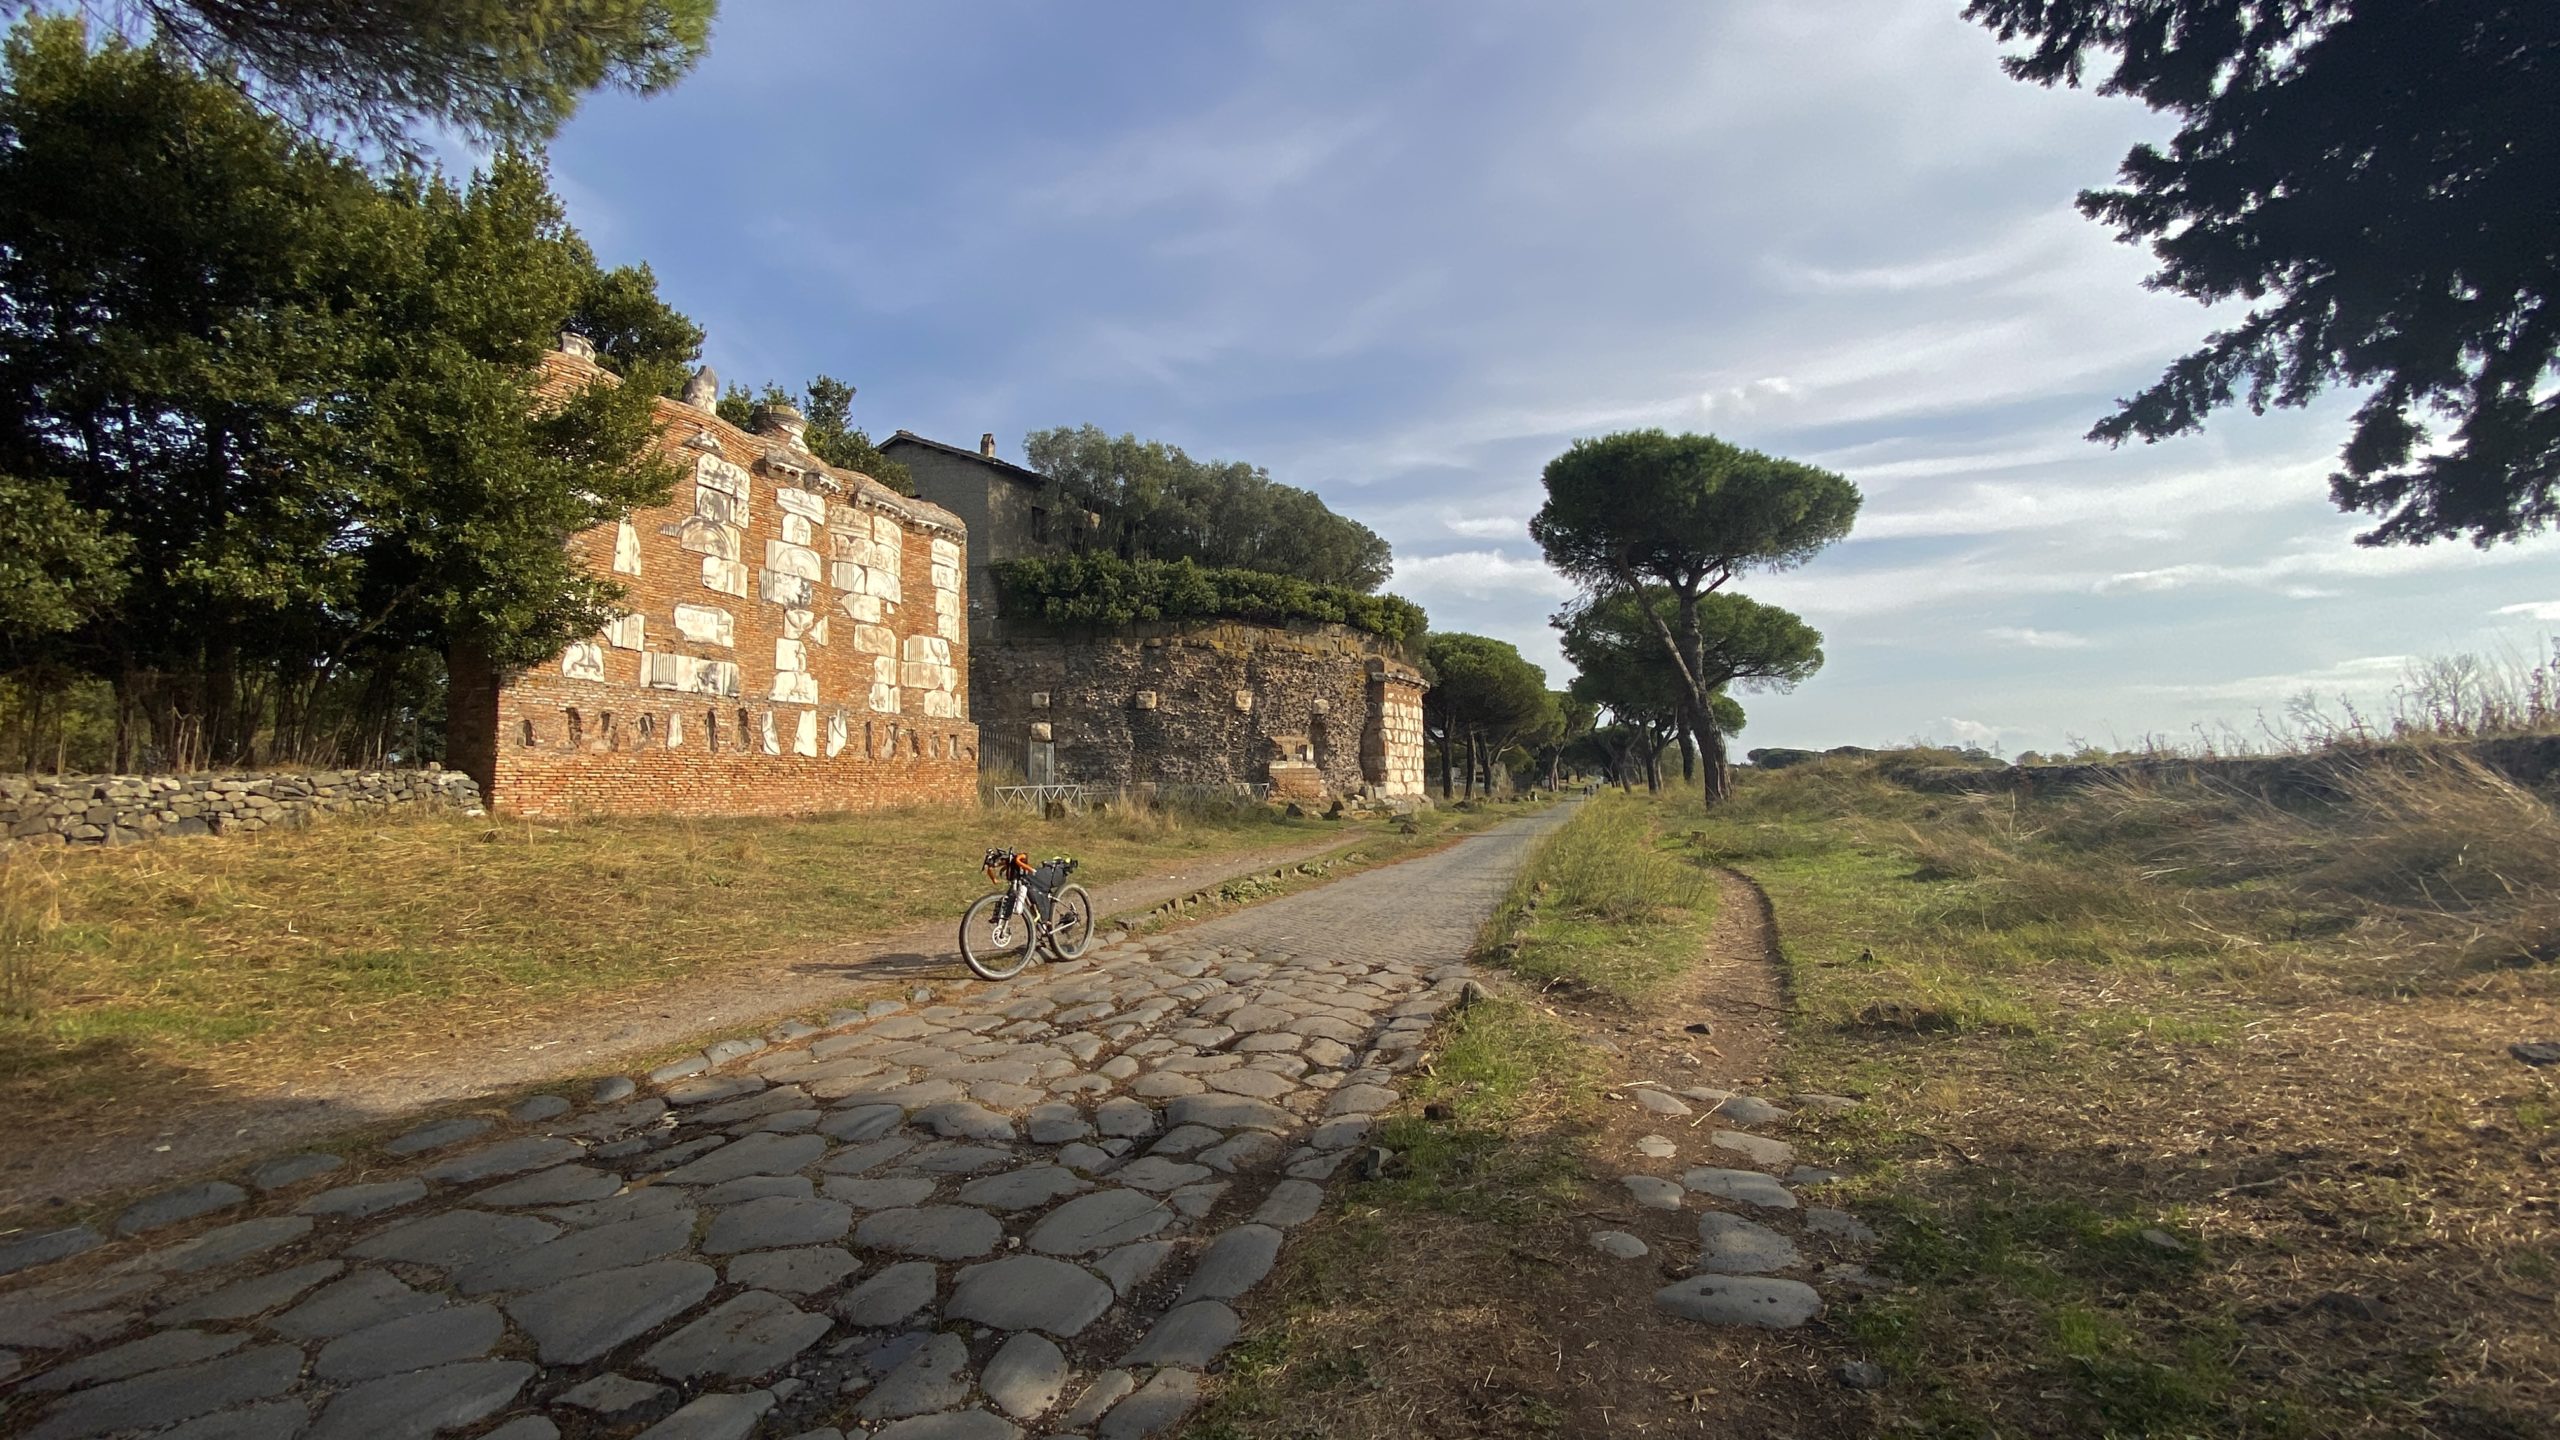 Appia antica in bici, cicloturismo in italia, cicloviaggio in Italia, cicloviaggi, viaggiatore lento, viaggiare in bici, Roma in bici, viaggiare in bicicletta, viaggi in bici italia